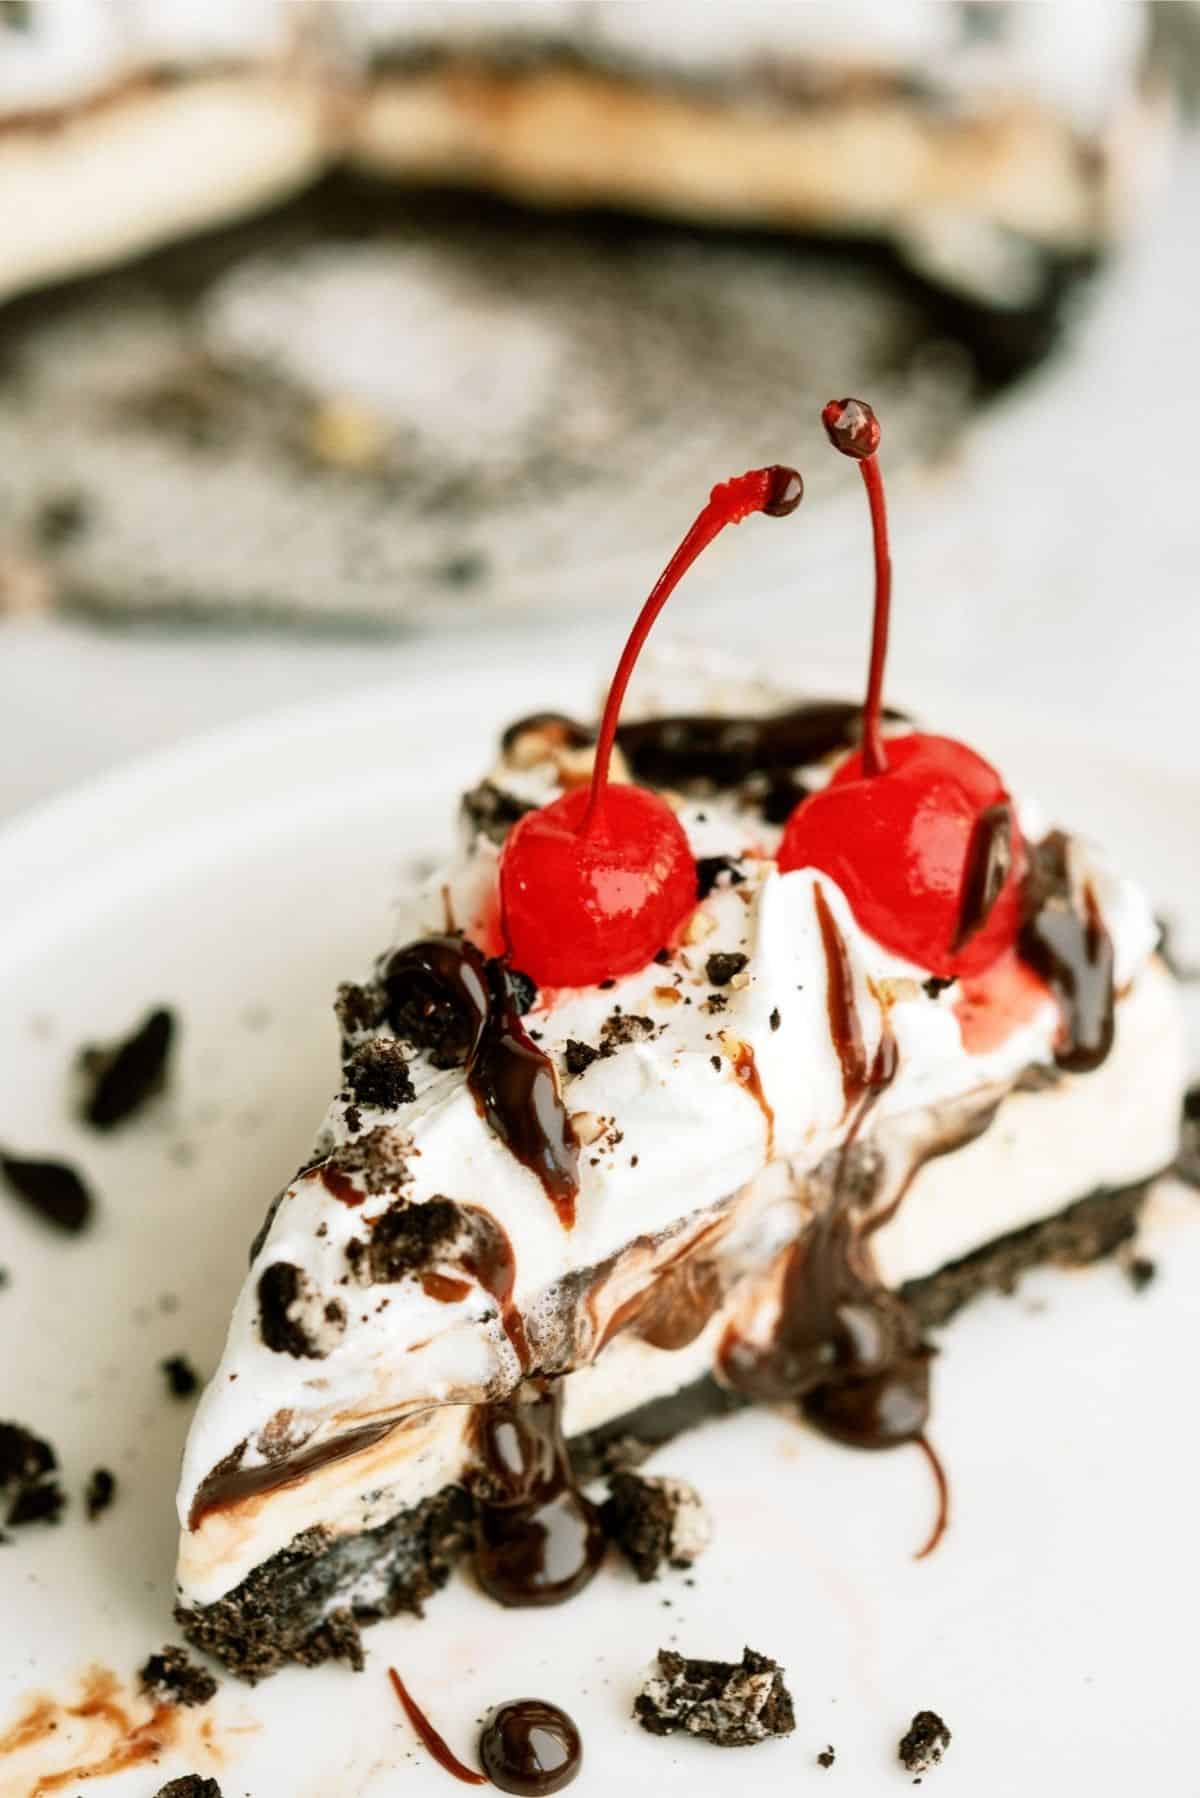 Easy Frozen Mud Pie Recipe (Made in Minutes!) - Dinner, then Dessert